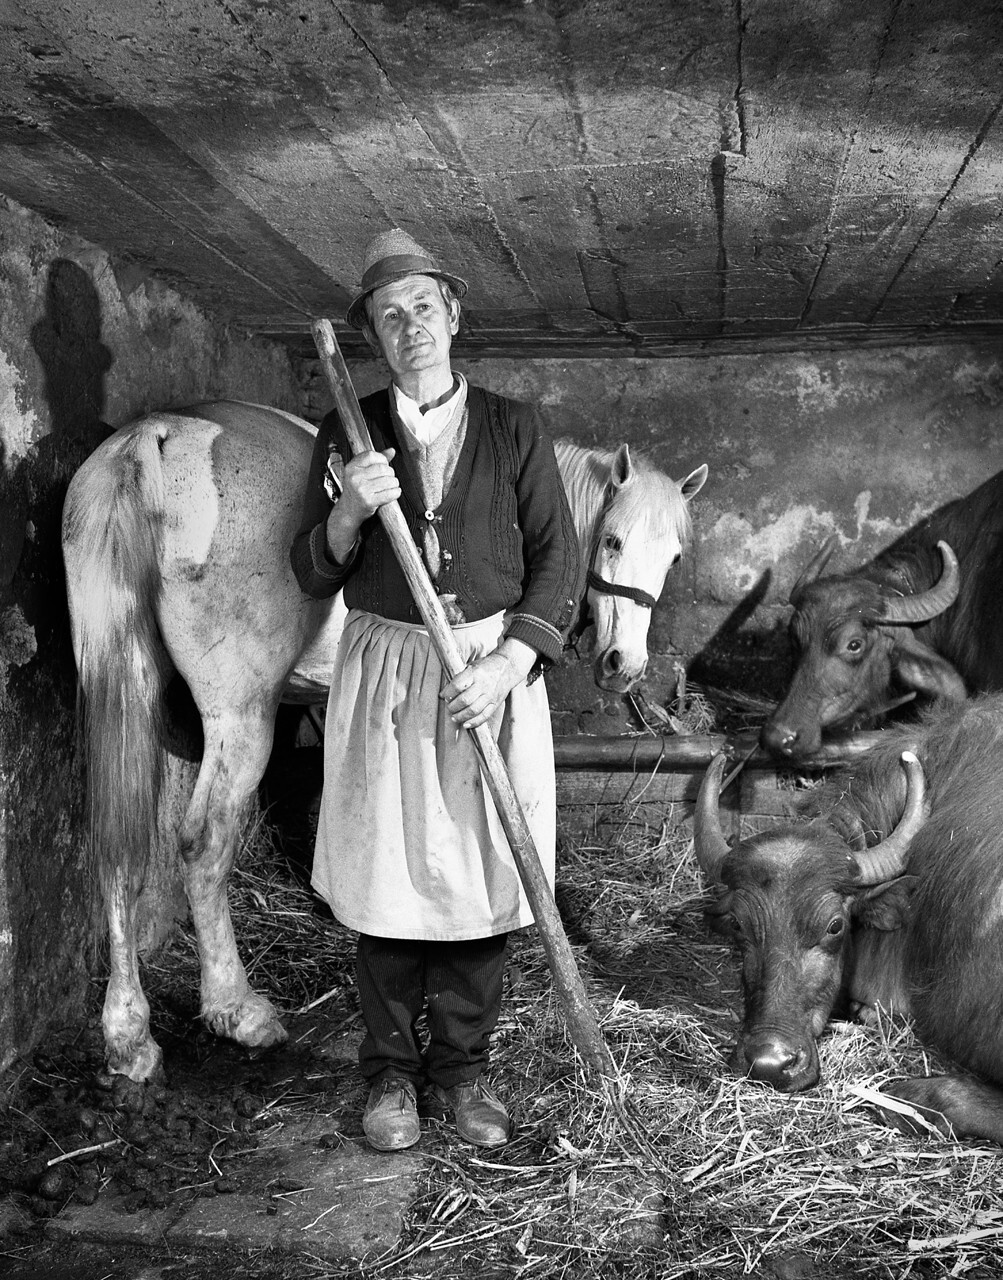 Фермер в своём хлеву, 1998. Фотограф Петер Корниш